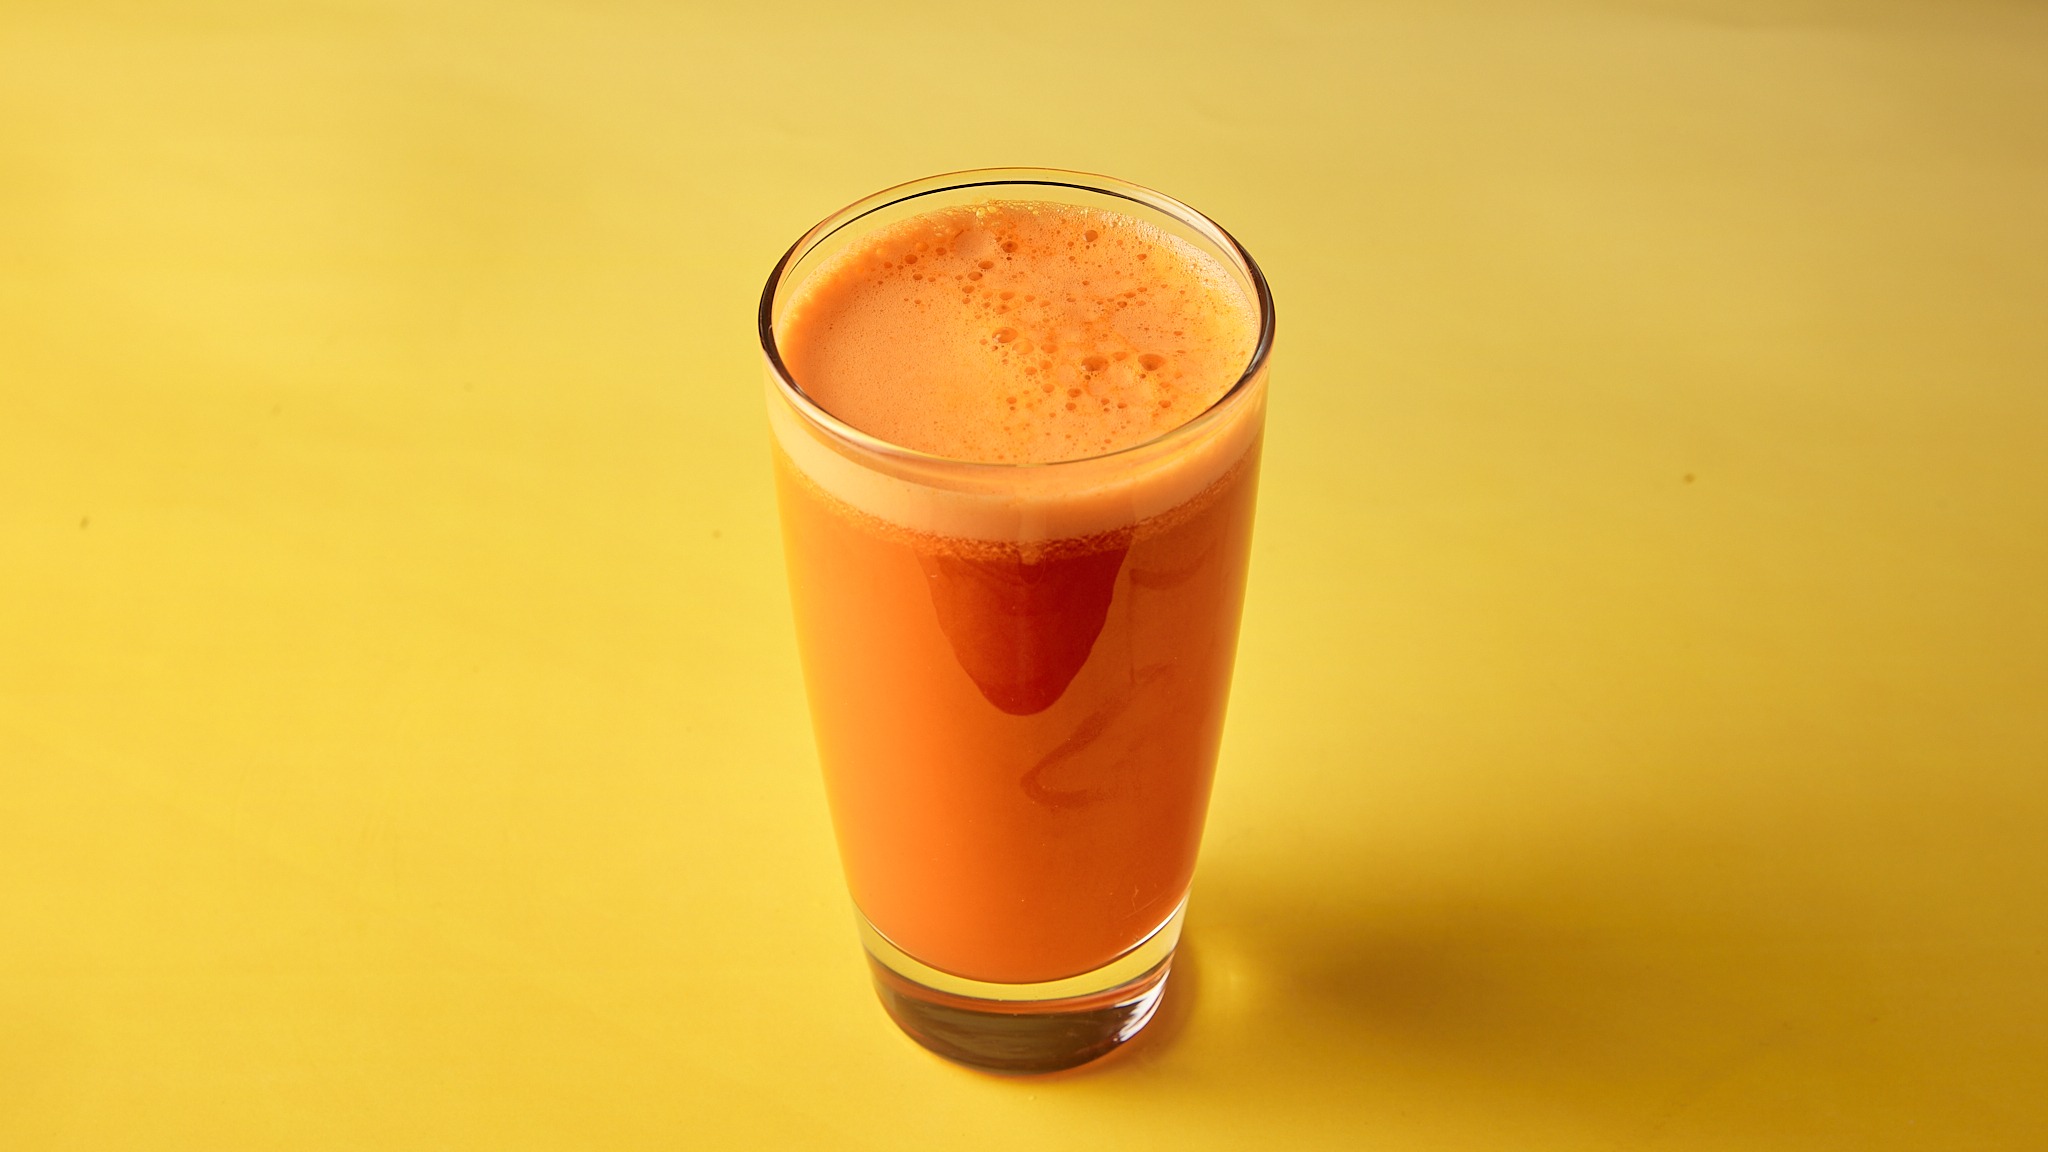 
Carrot Juice 
